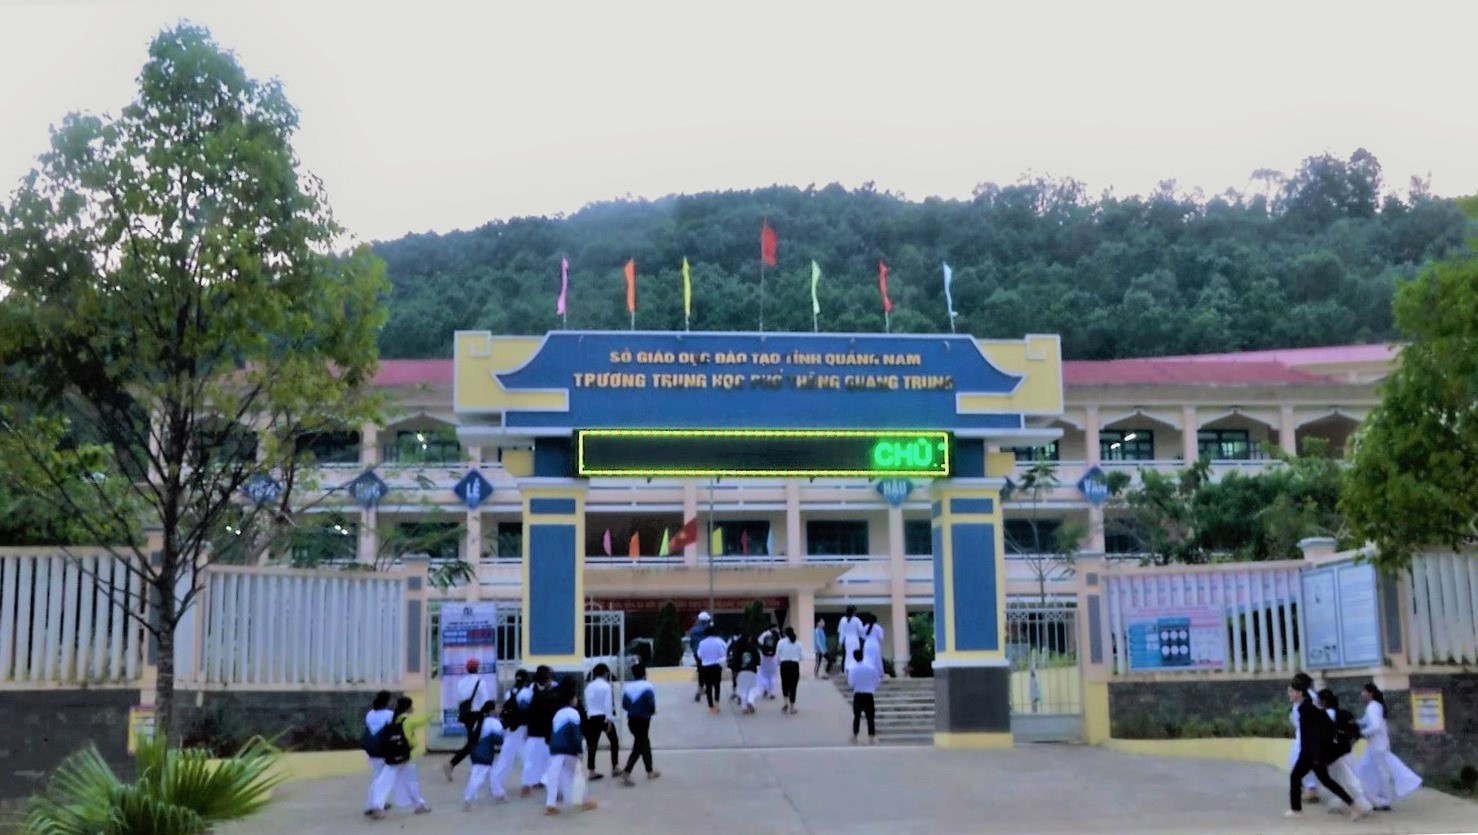 Trường THPT Quang Trung (thị trấn P’rao, Đông Giang) là một trong những trường đầu tiên ở Quảng Nam xây dựng mô hình “Trường học hạnh phúc”. Ảnh: L.N